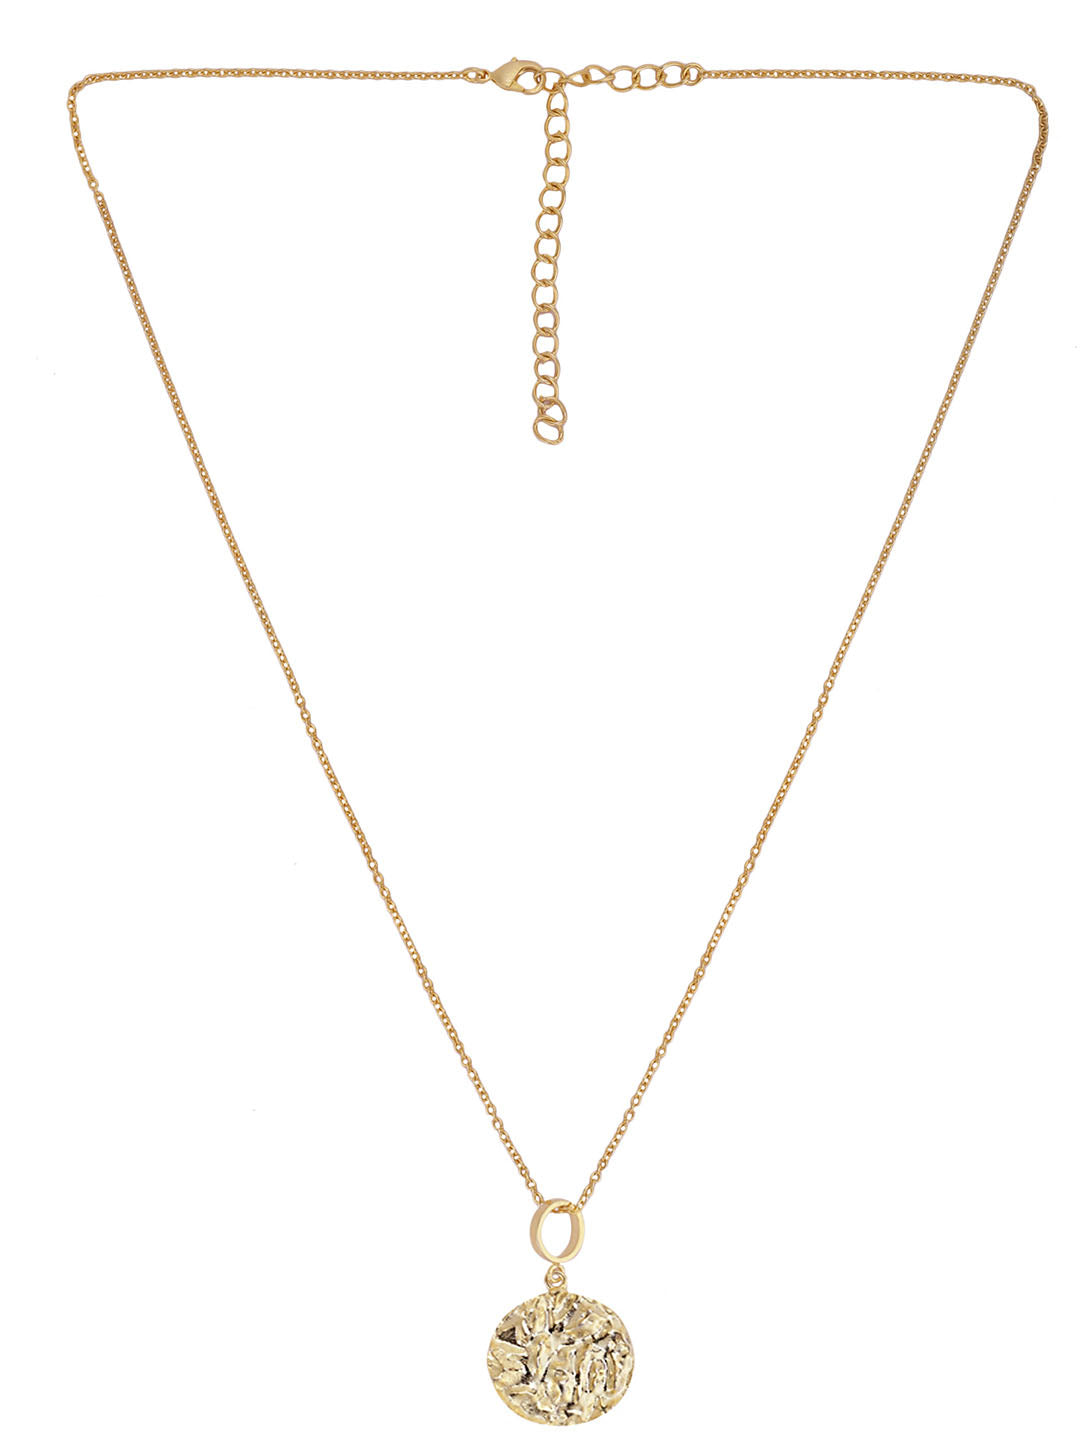 Gold Plated Textured Circular Necklace, Neckpiece - Shopberserk